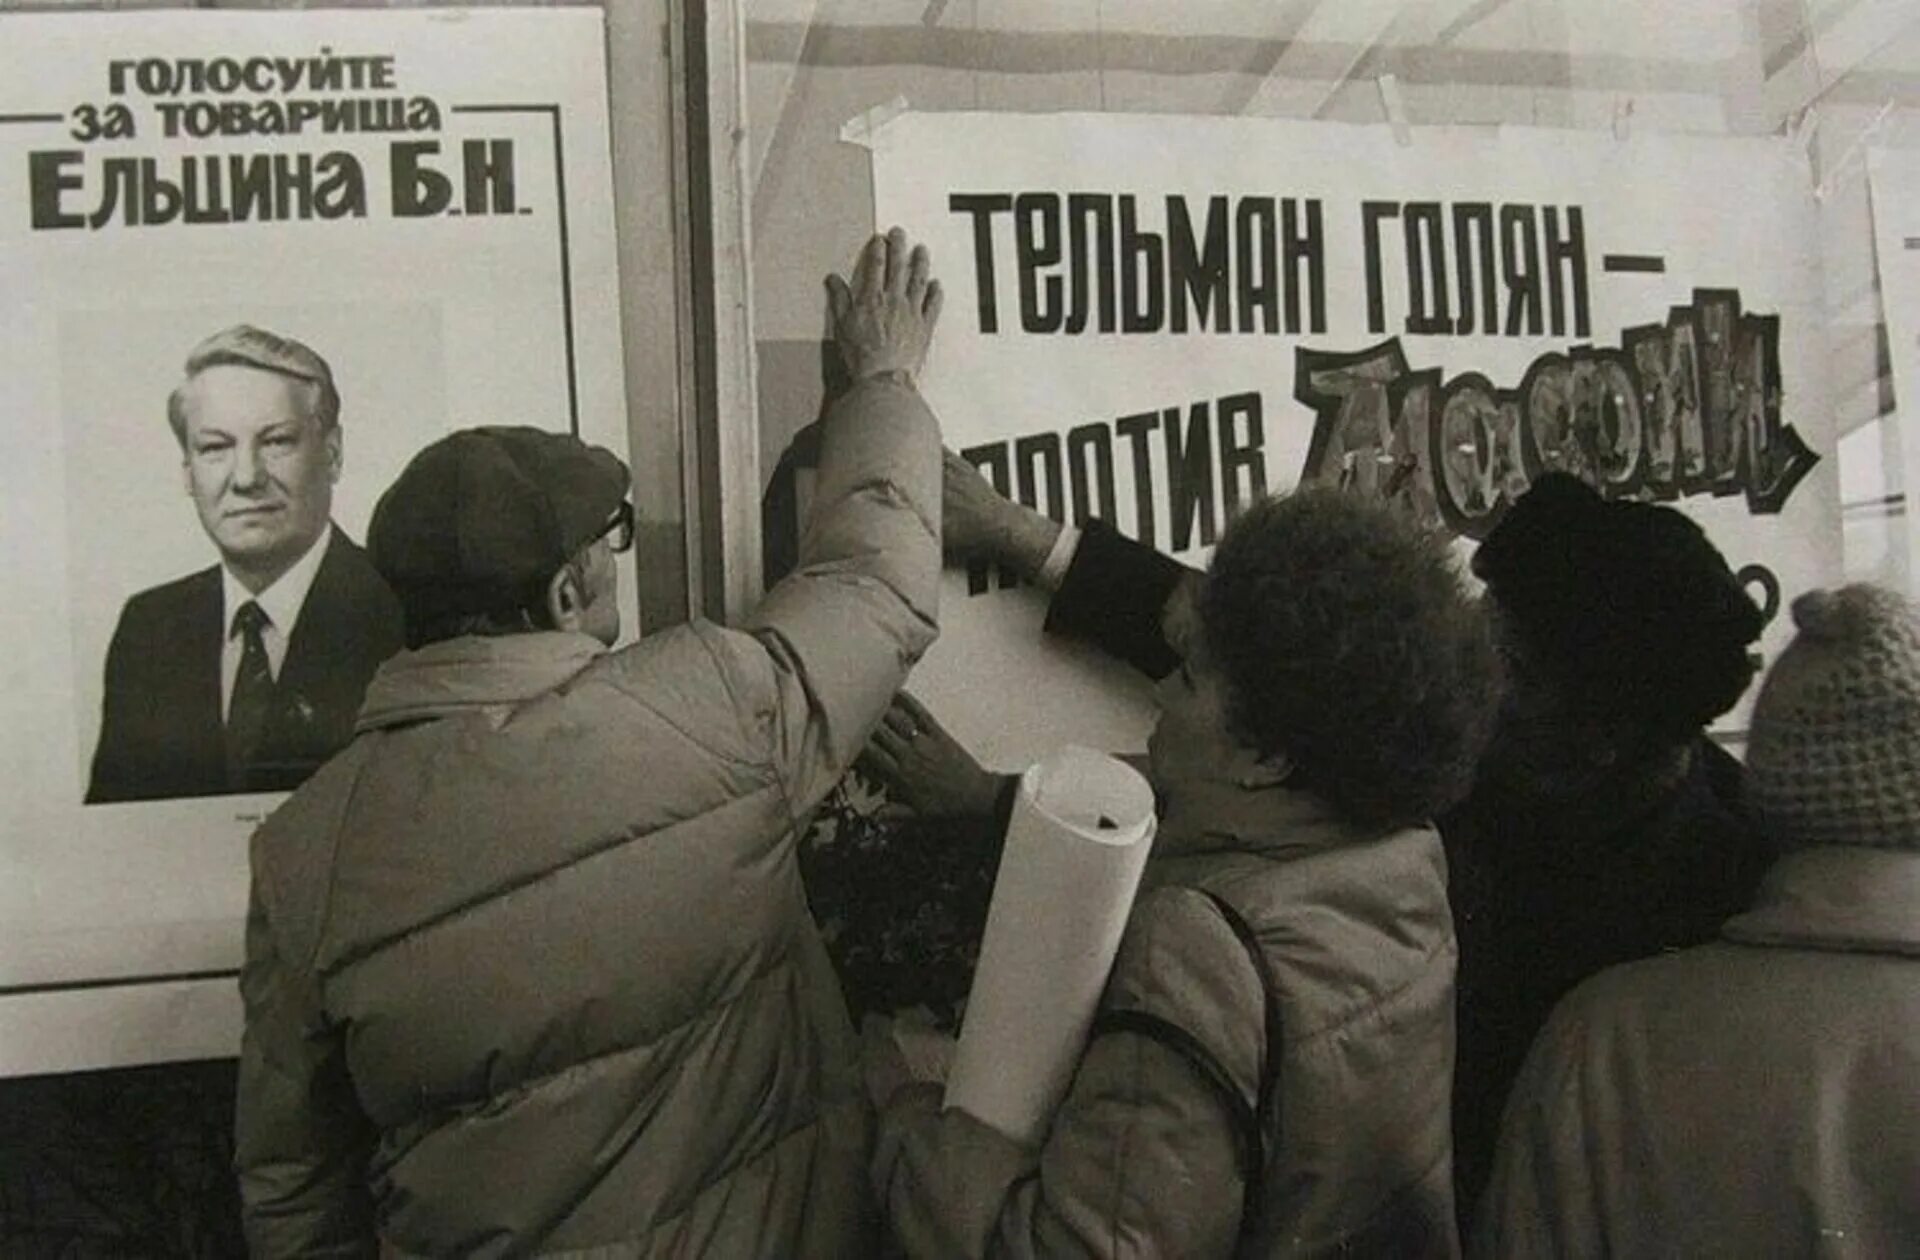 Ельцин выборы 1991. Ельцин митинг 1990. Митинги в России 1991 года за Ельцина. Ельцин в 90-е годы. 1 июня выборы